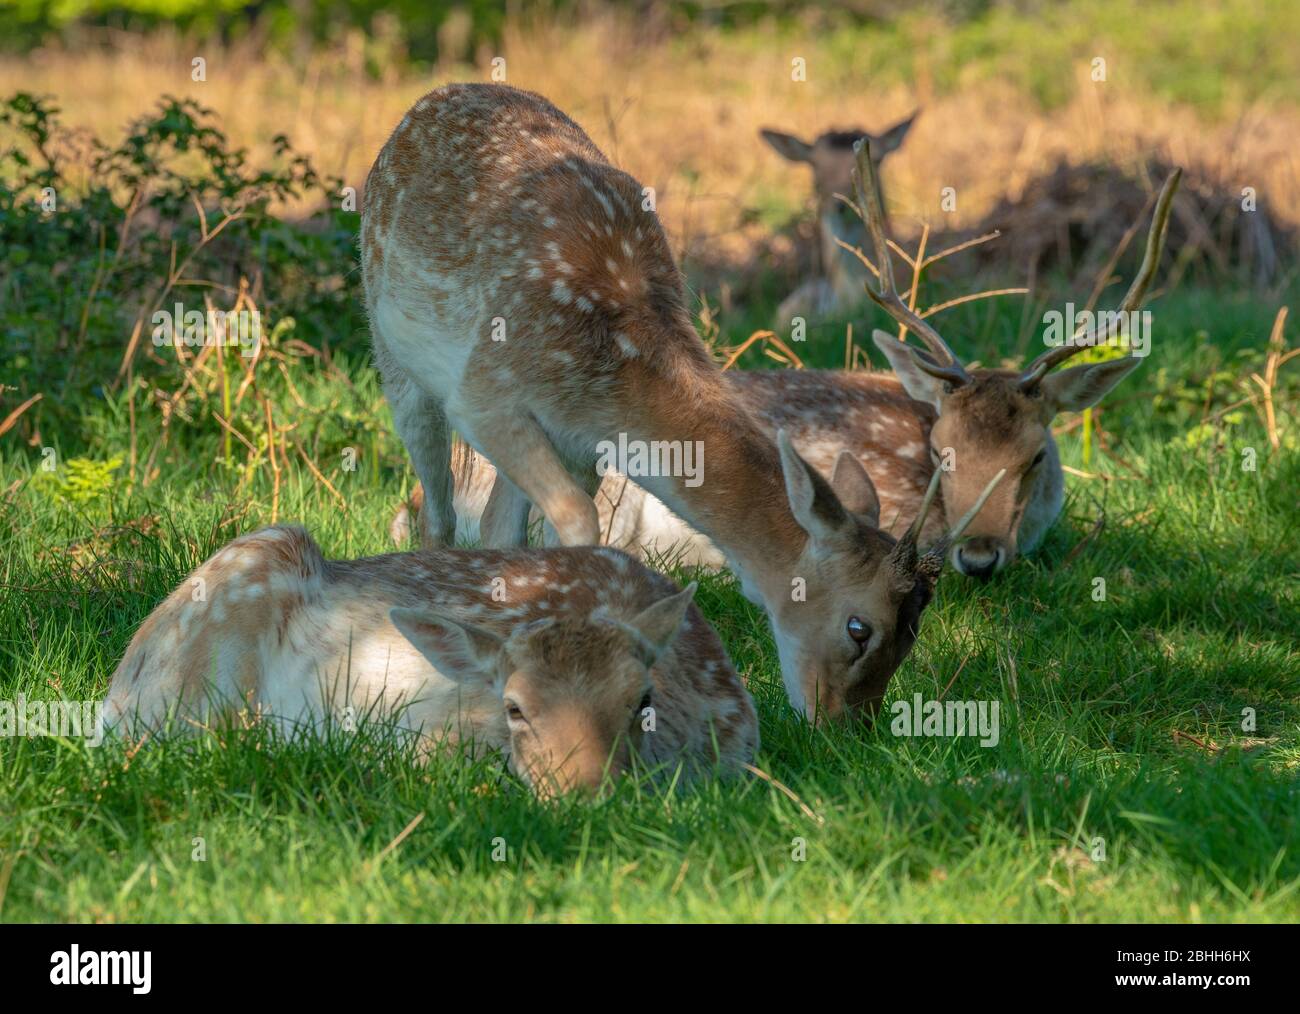 Bel giovane cervo nella fauna selvatica Foto Stock